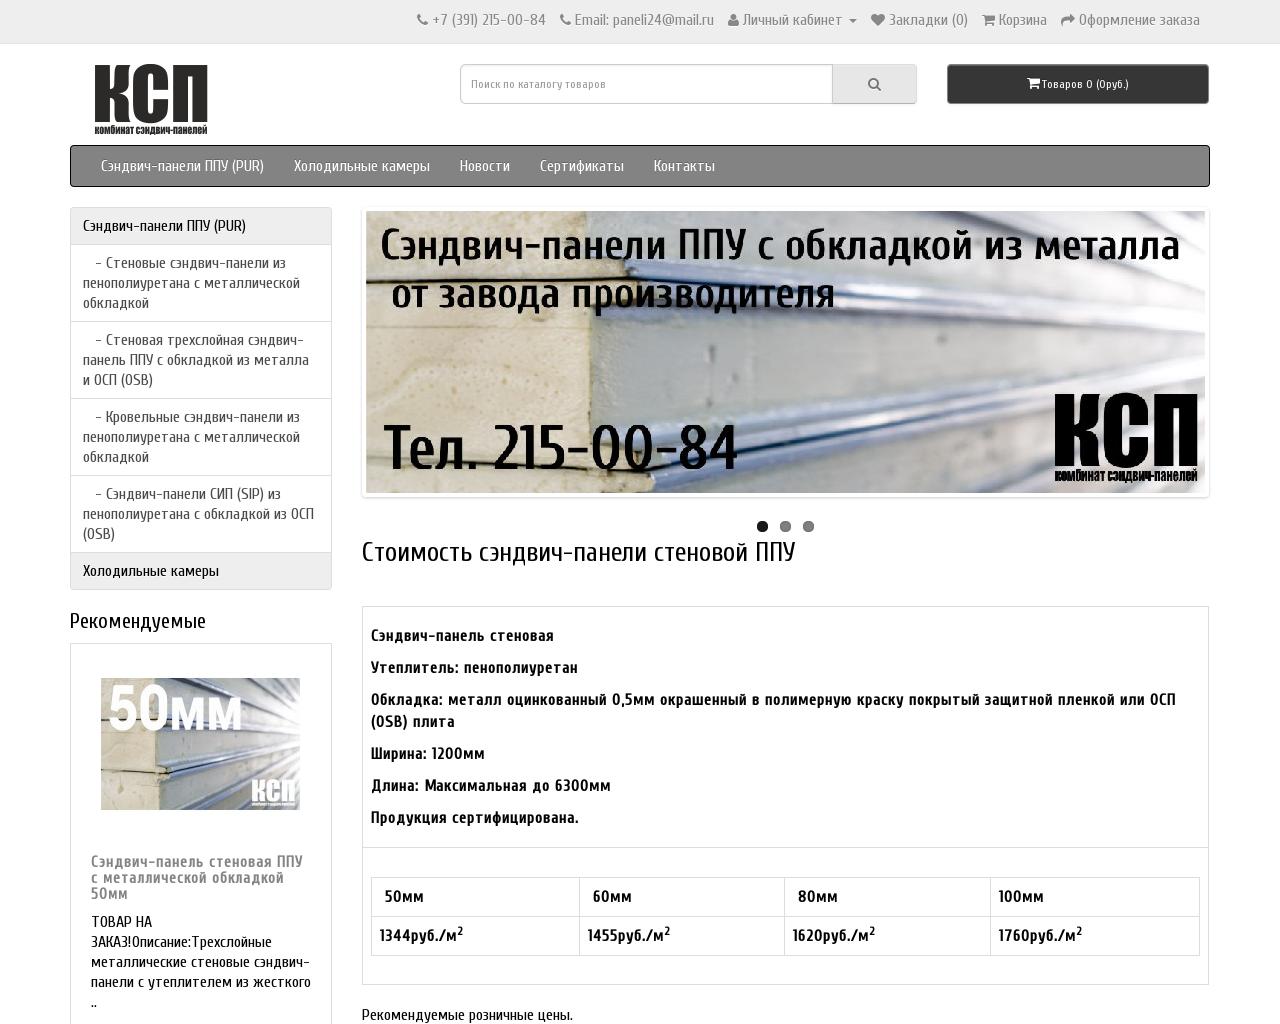 Изображение сайта sehndvichpanel.ru в разрешении 1280x1024